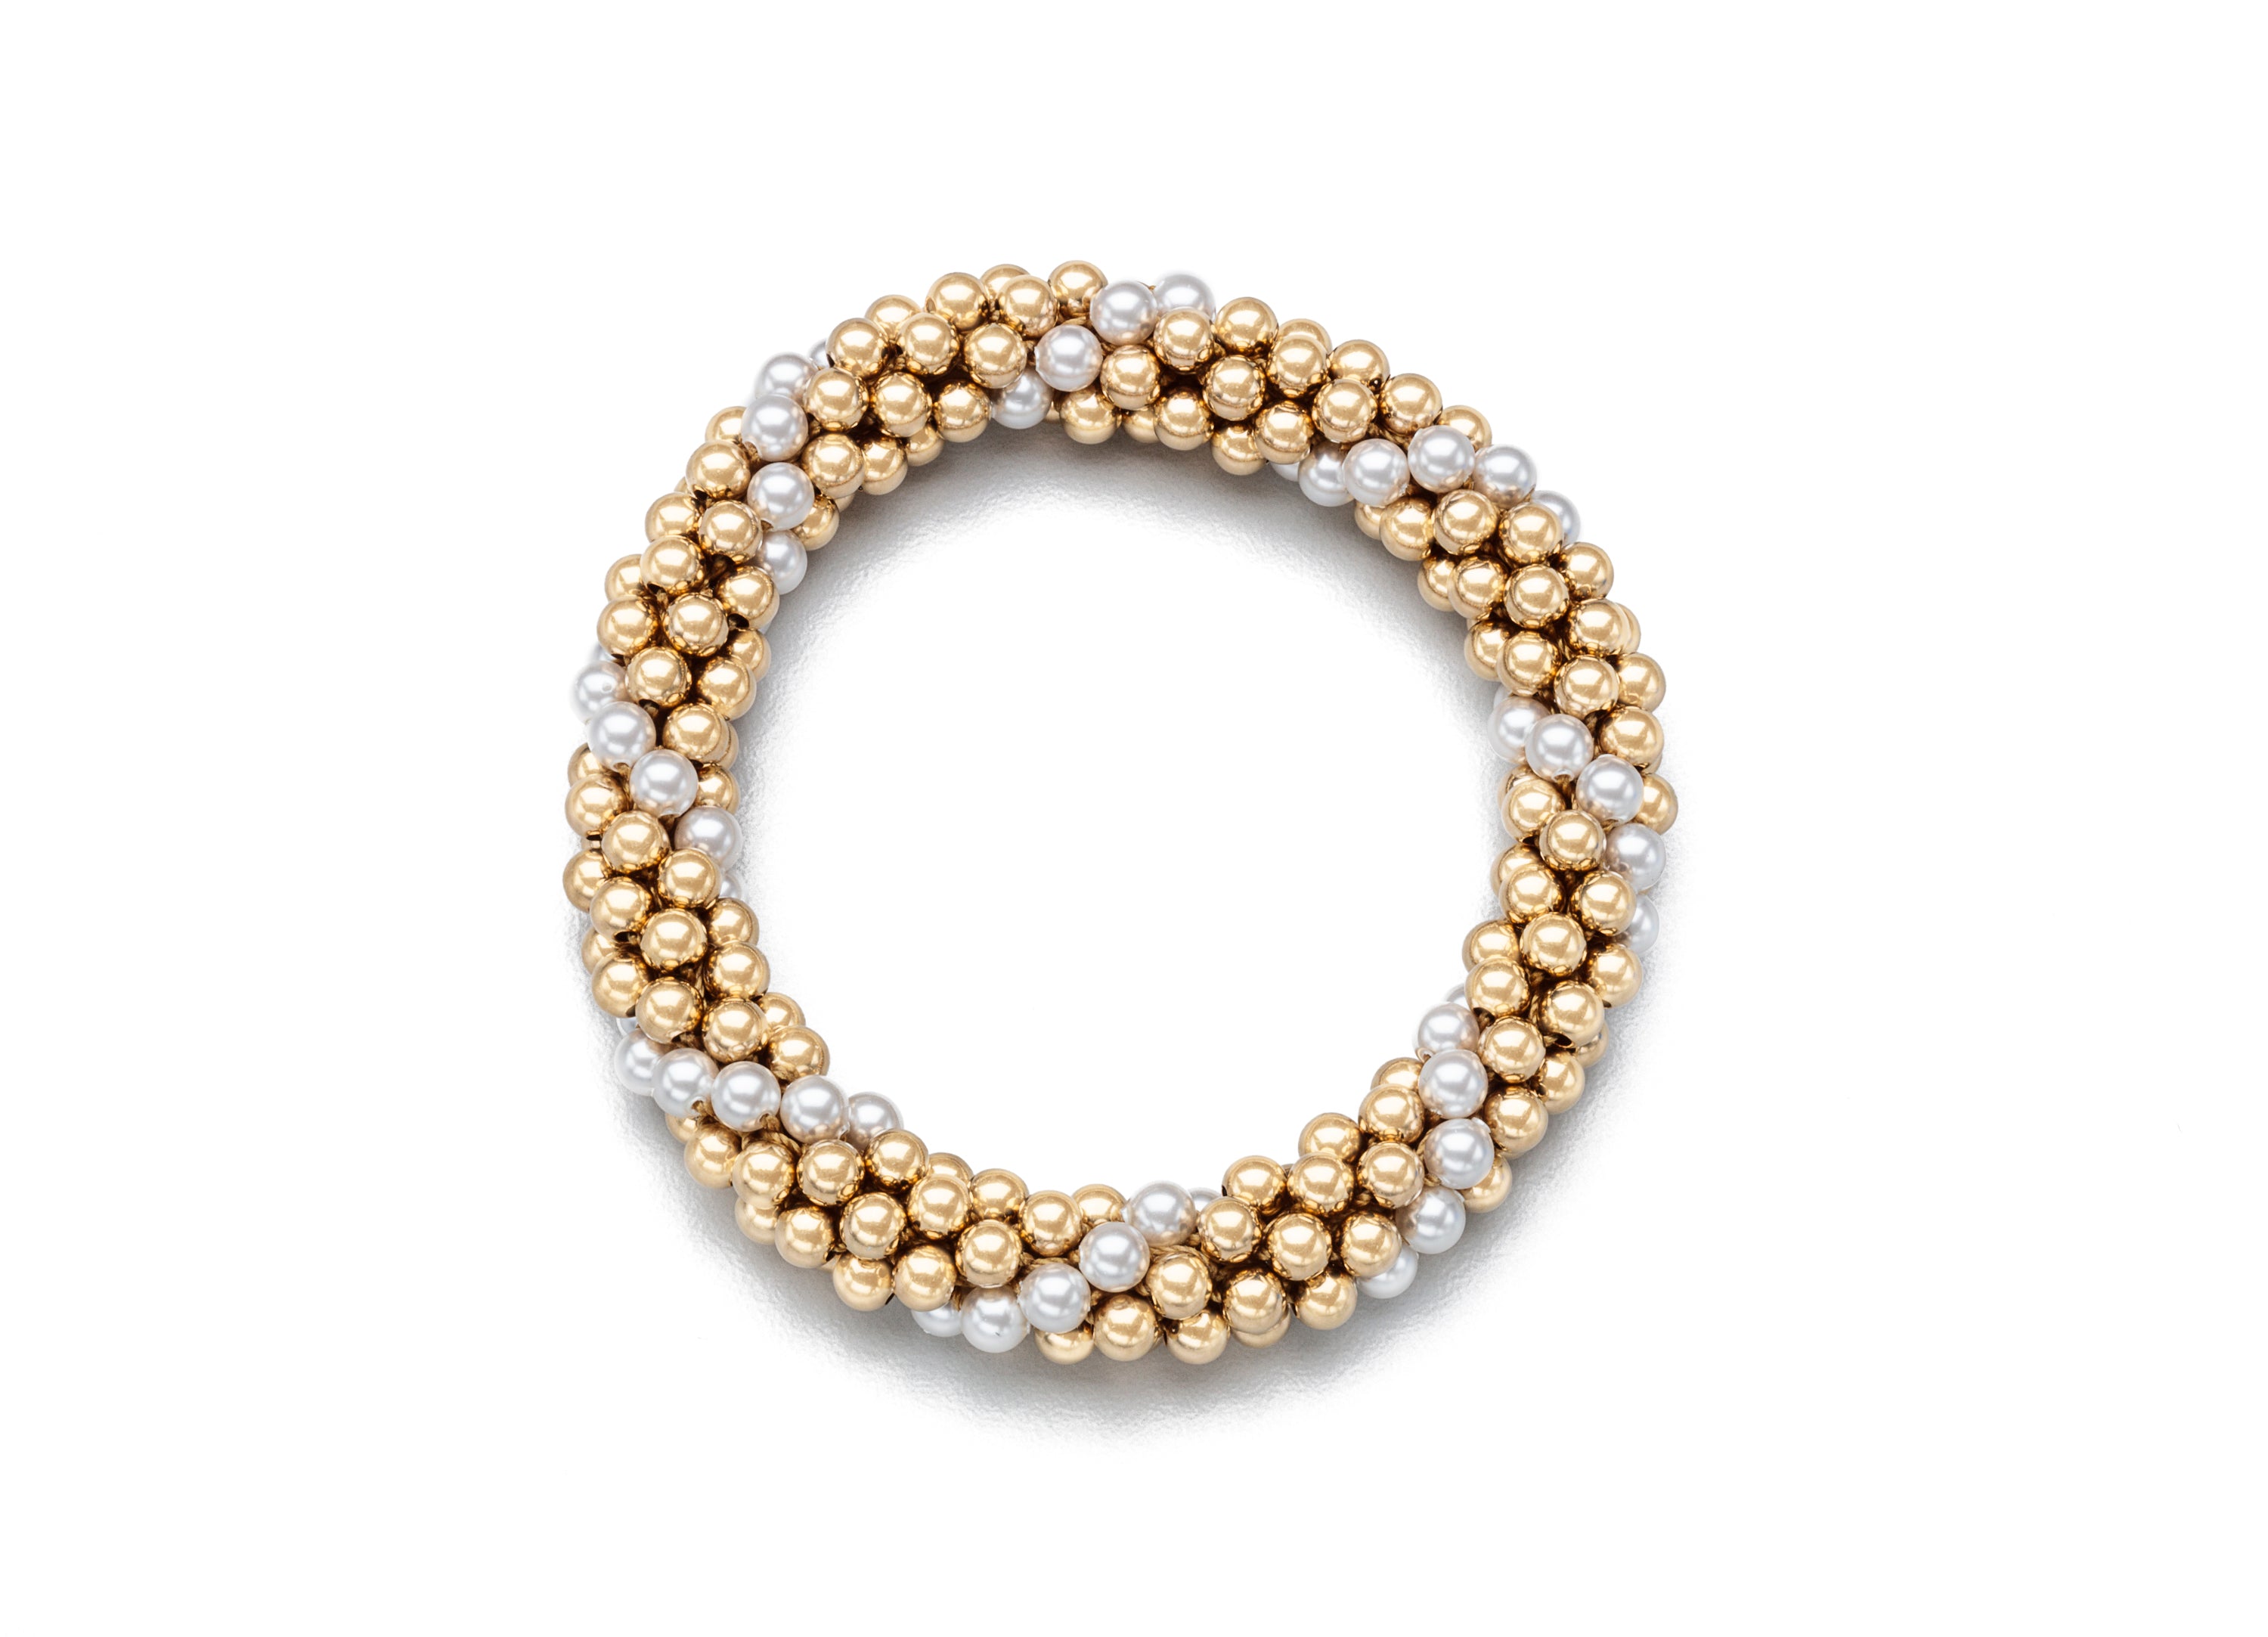 Party Wear Gold Tone Bracelet Flower Pattern Trendy Jewelry Collection  BRAC104